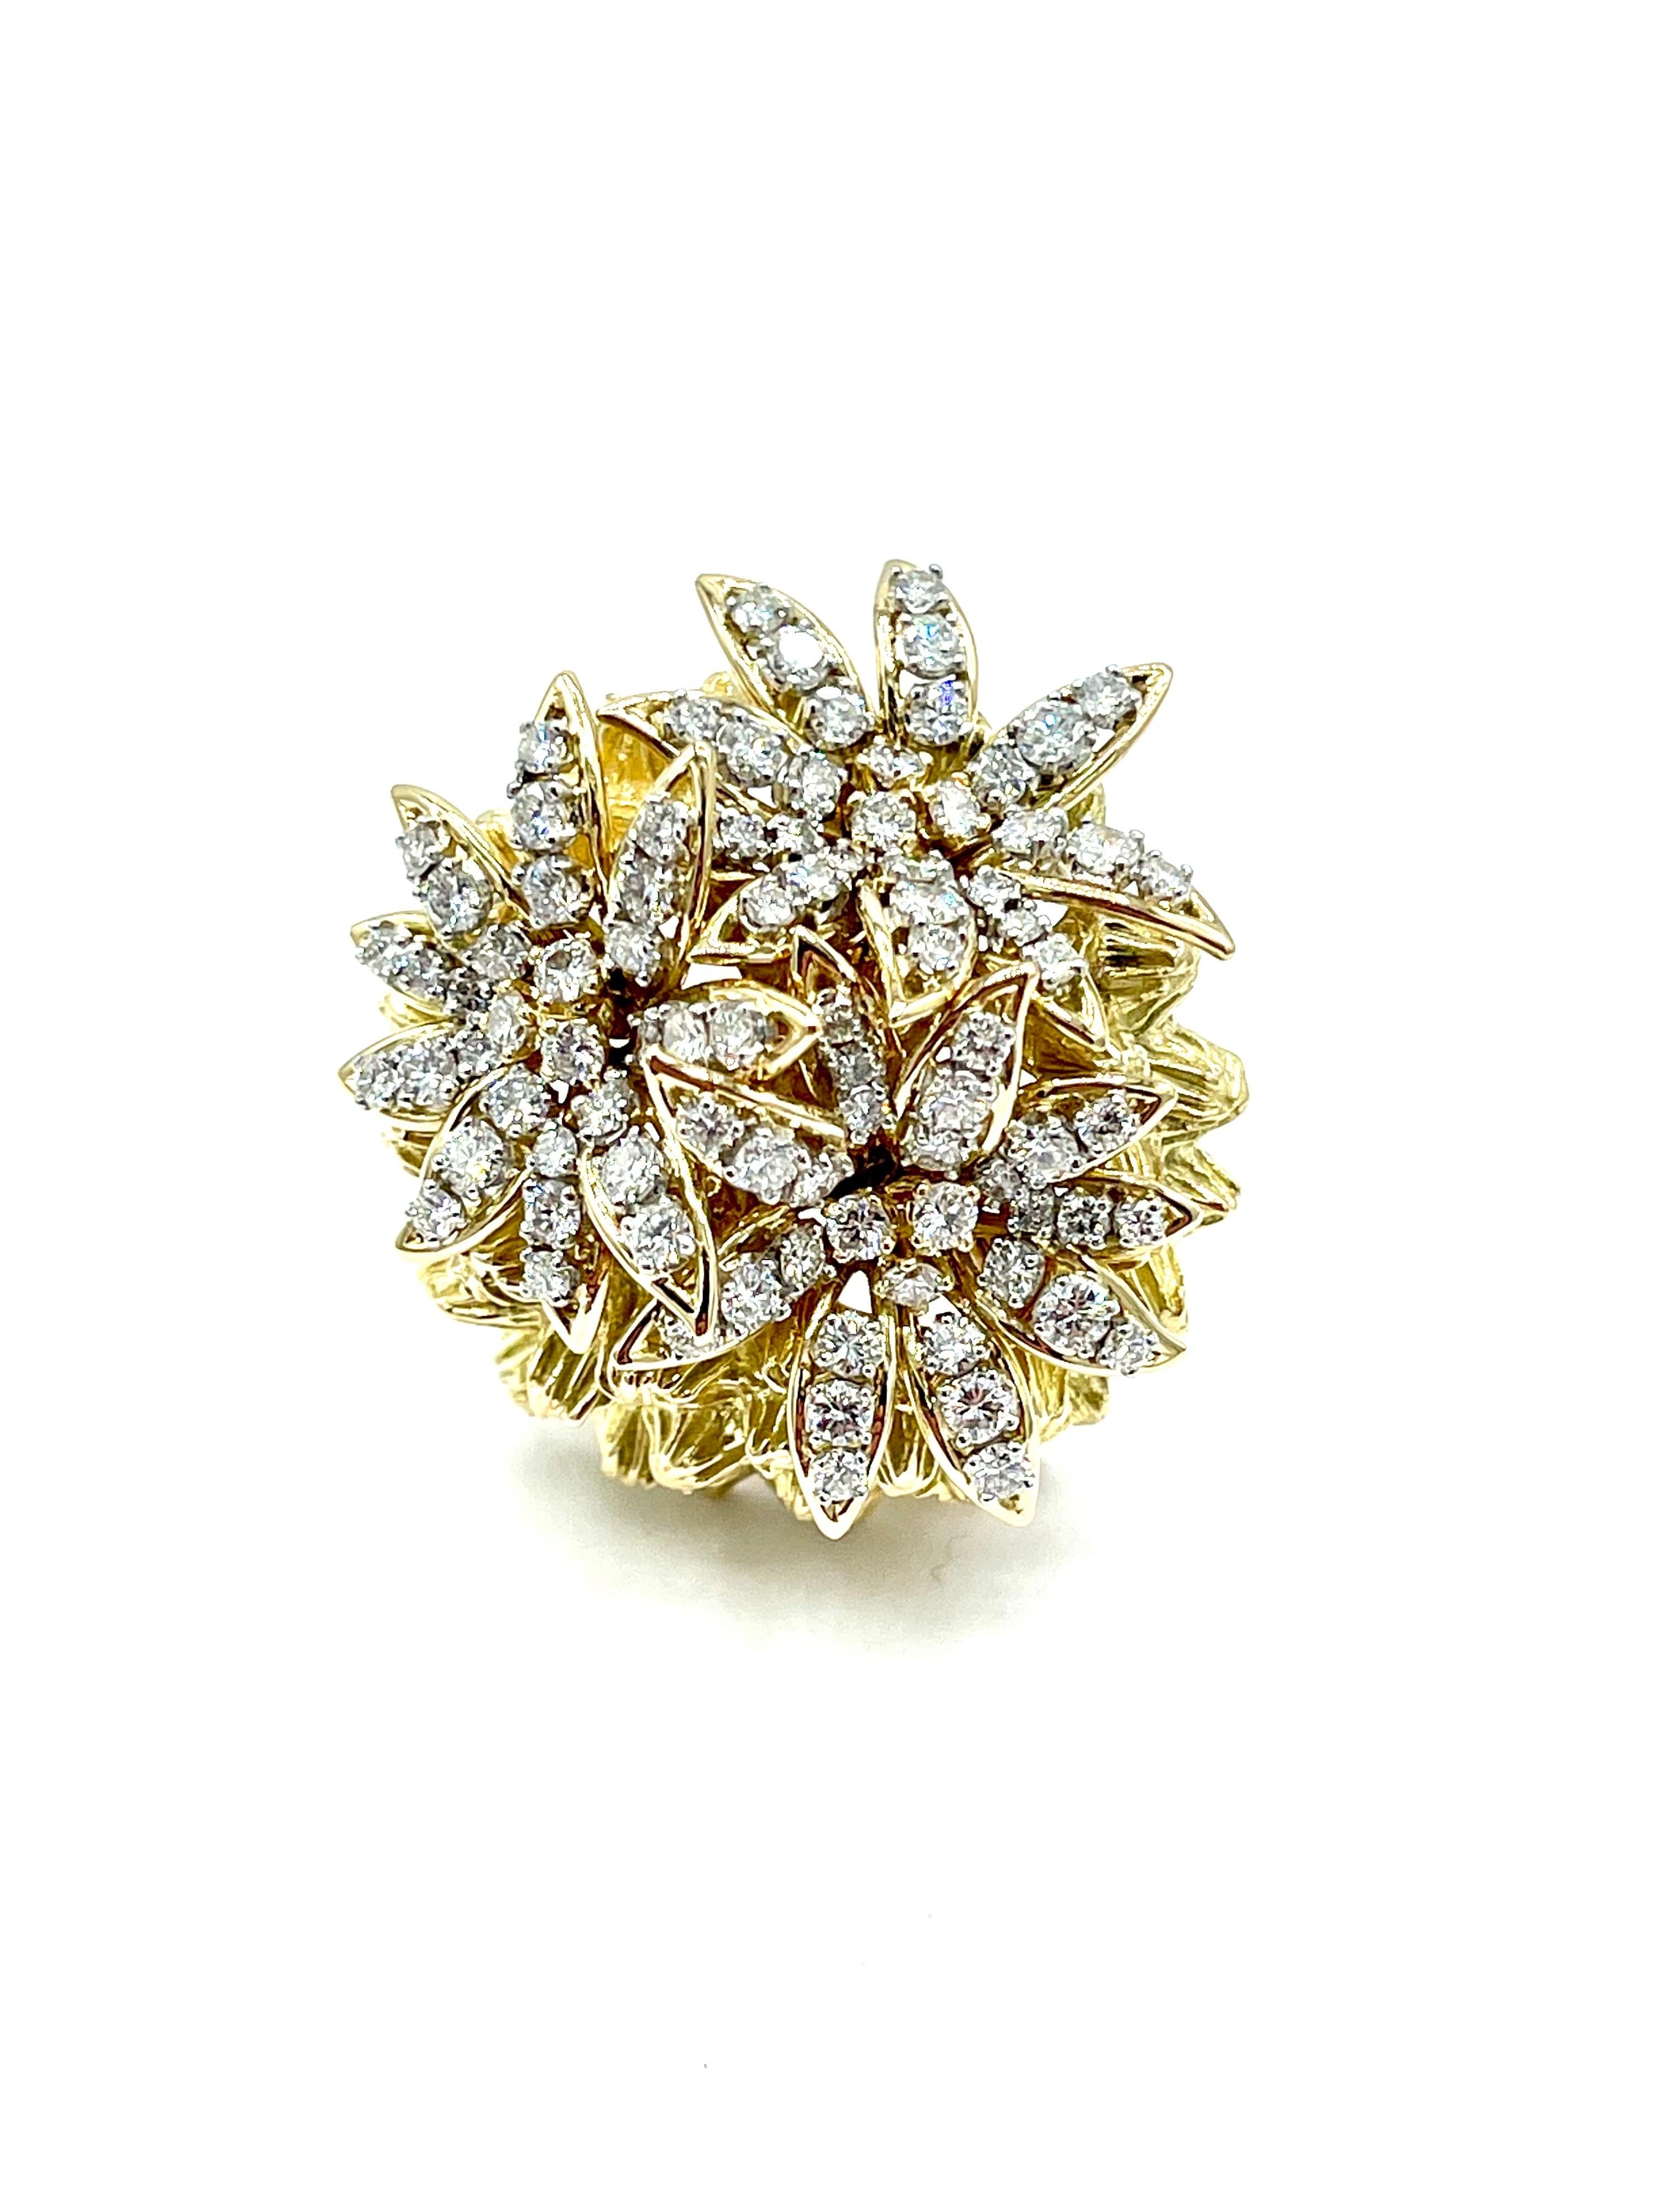 Eine schöne Brosche aus französischem Diamant und 18 Karat Gelbgold!  Die Brosche besteht aus drei runden, brillanten Diamantblumen, die auf einer detaillierten, strukturierten Kuppel aus 18 Karat Gelbgold sitzen.  Die Diamanten haben ein